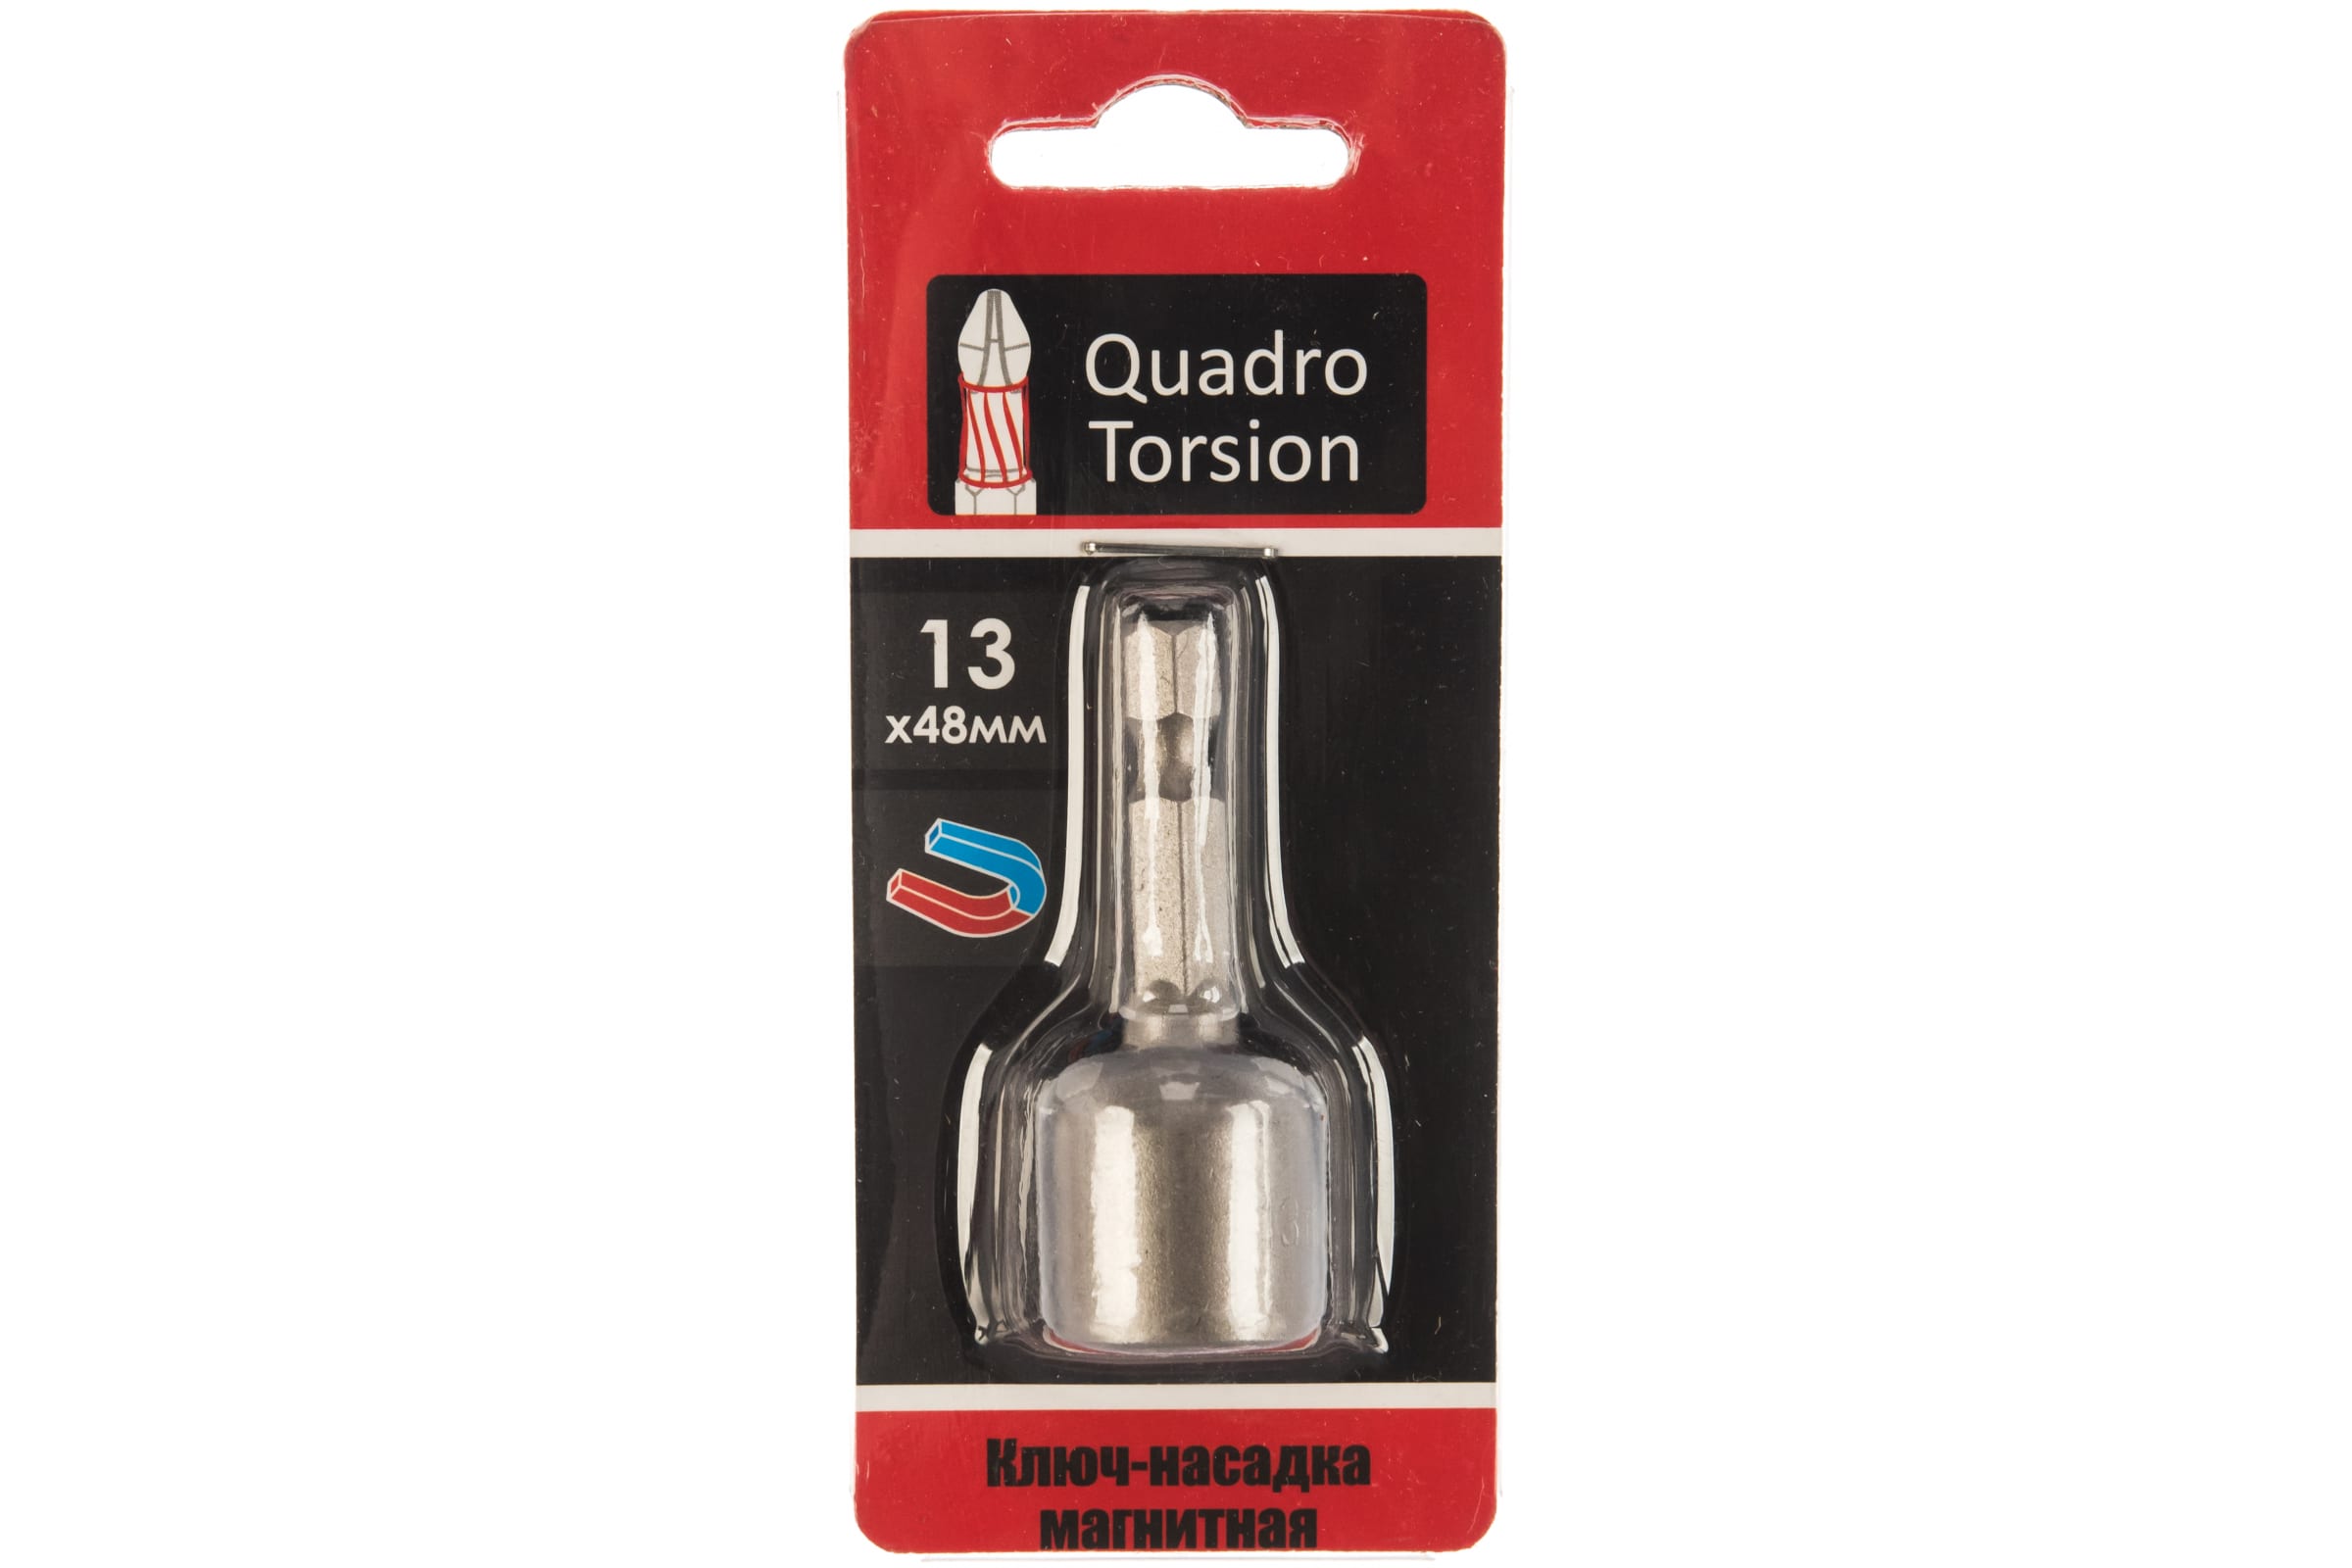 Quadro Torsion Ключ-насадка магнитная 13х48мм 1 шт./карта 400113 магнитная насадка ключ quadro torsion